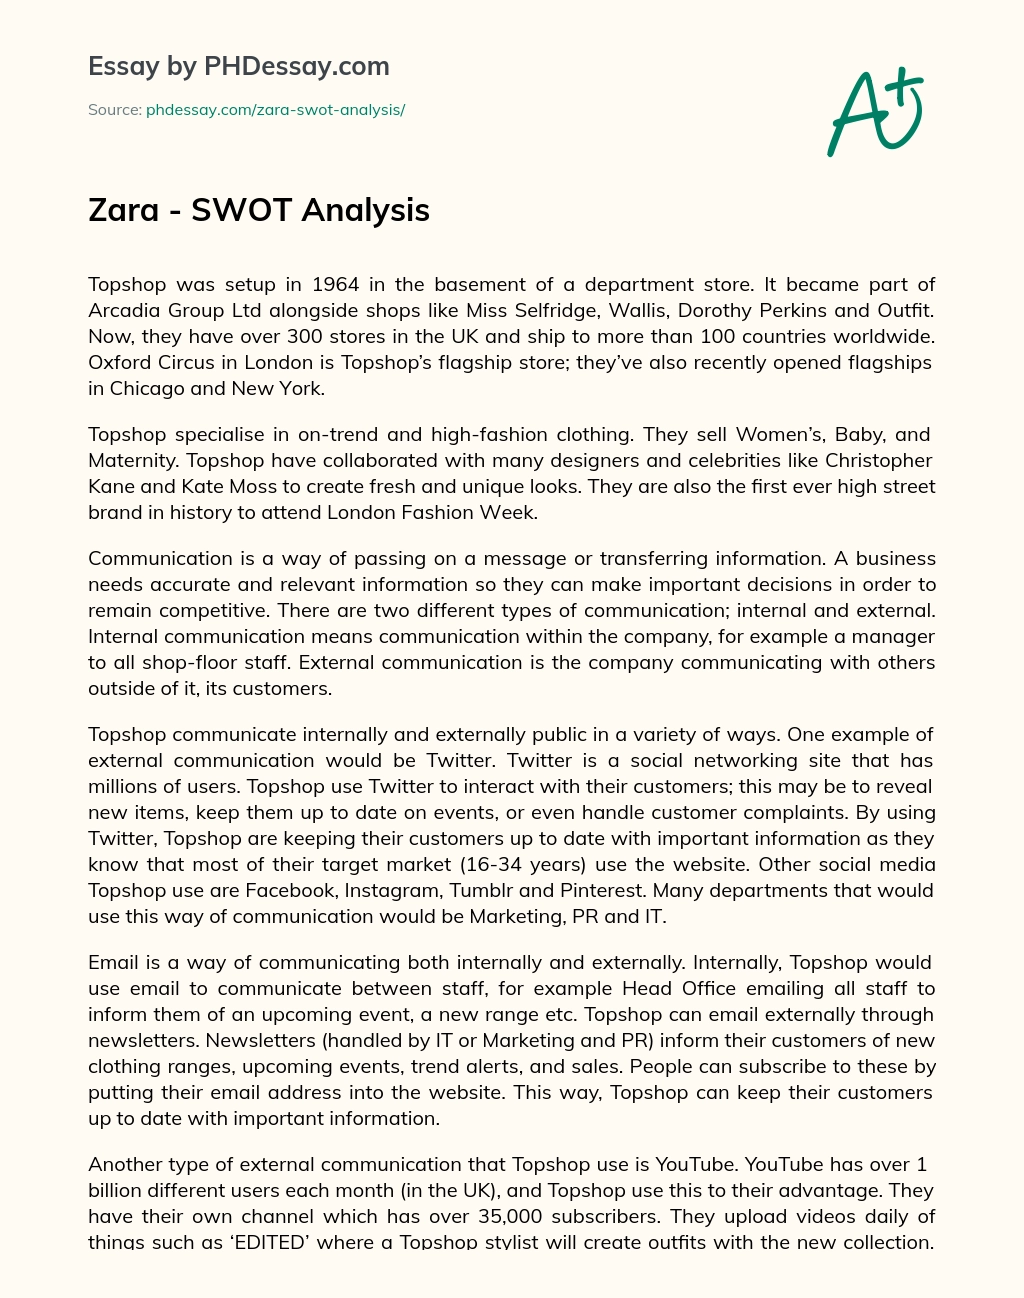 Zara – SWOT Analysis essay